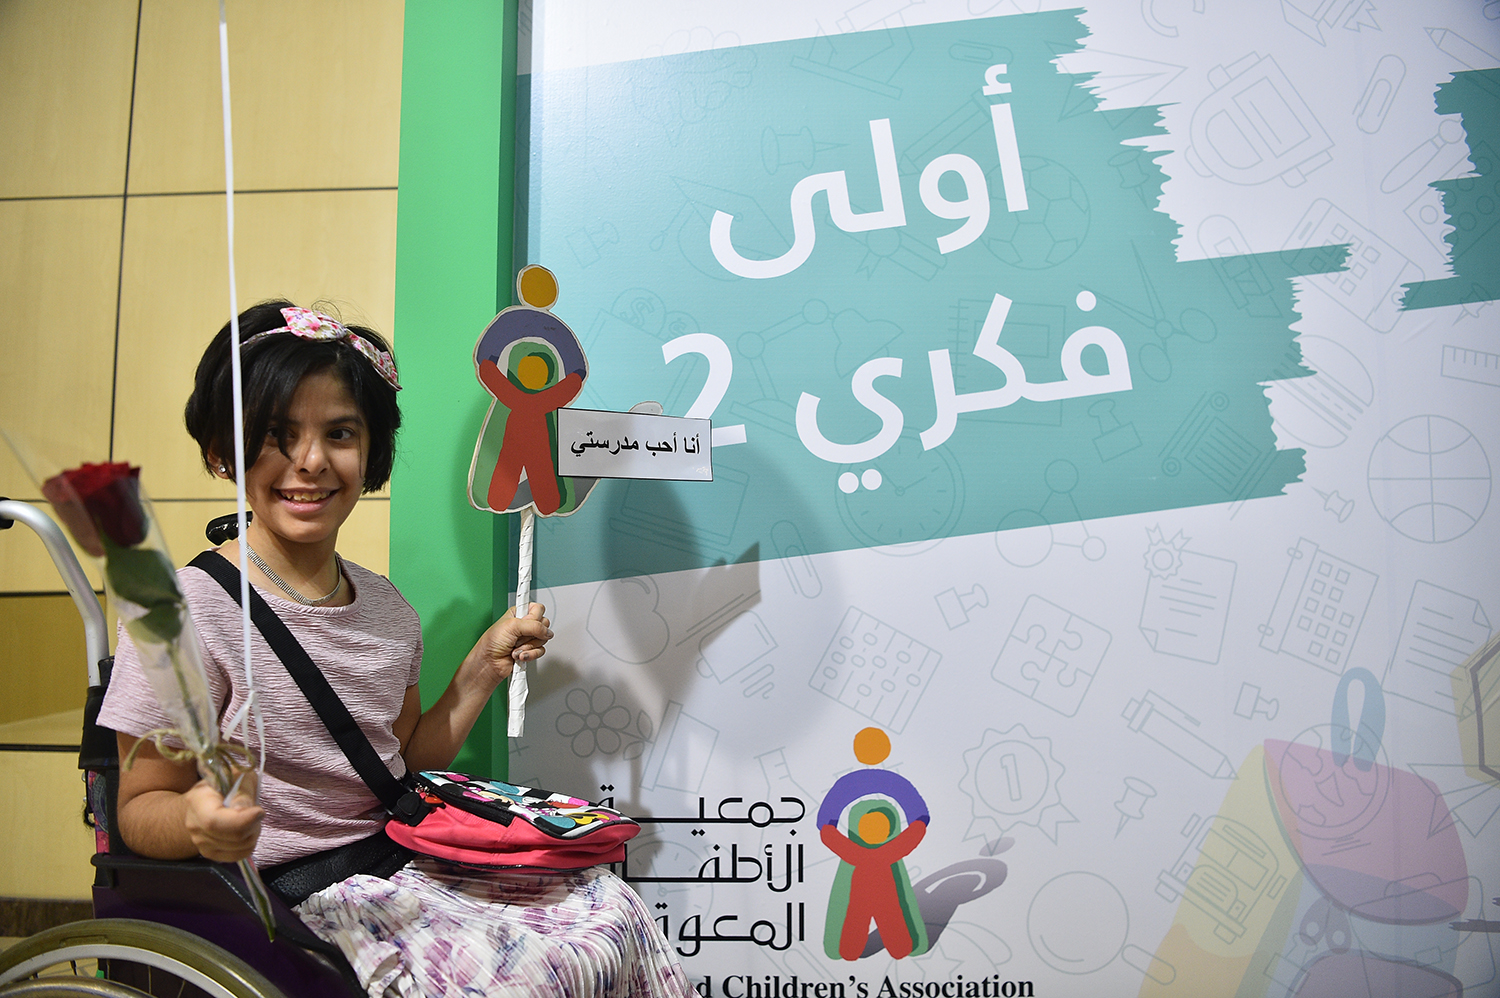 فعاليات واستعراضات.. مركز الملك فهد لرعاية الأطفال المعوقين يحتفل بالعام الدراسي